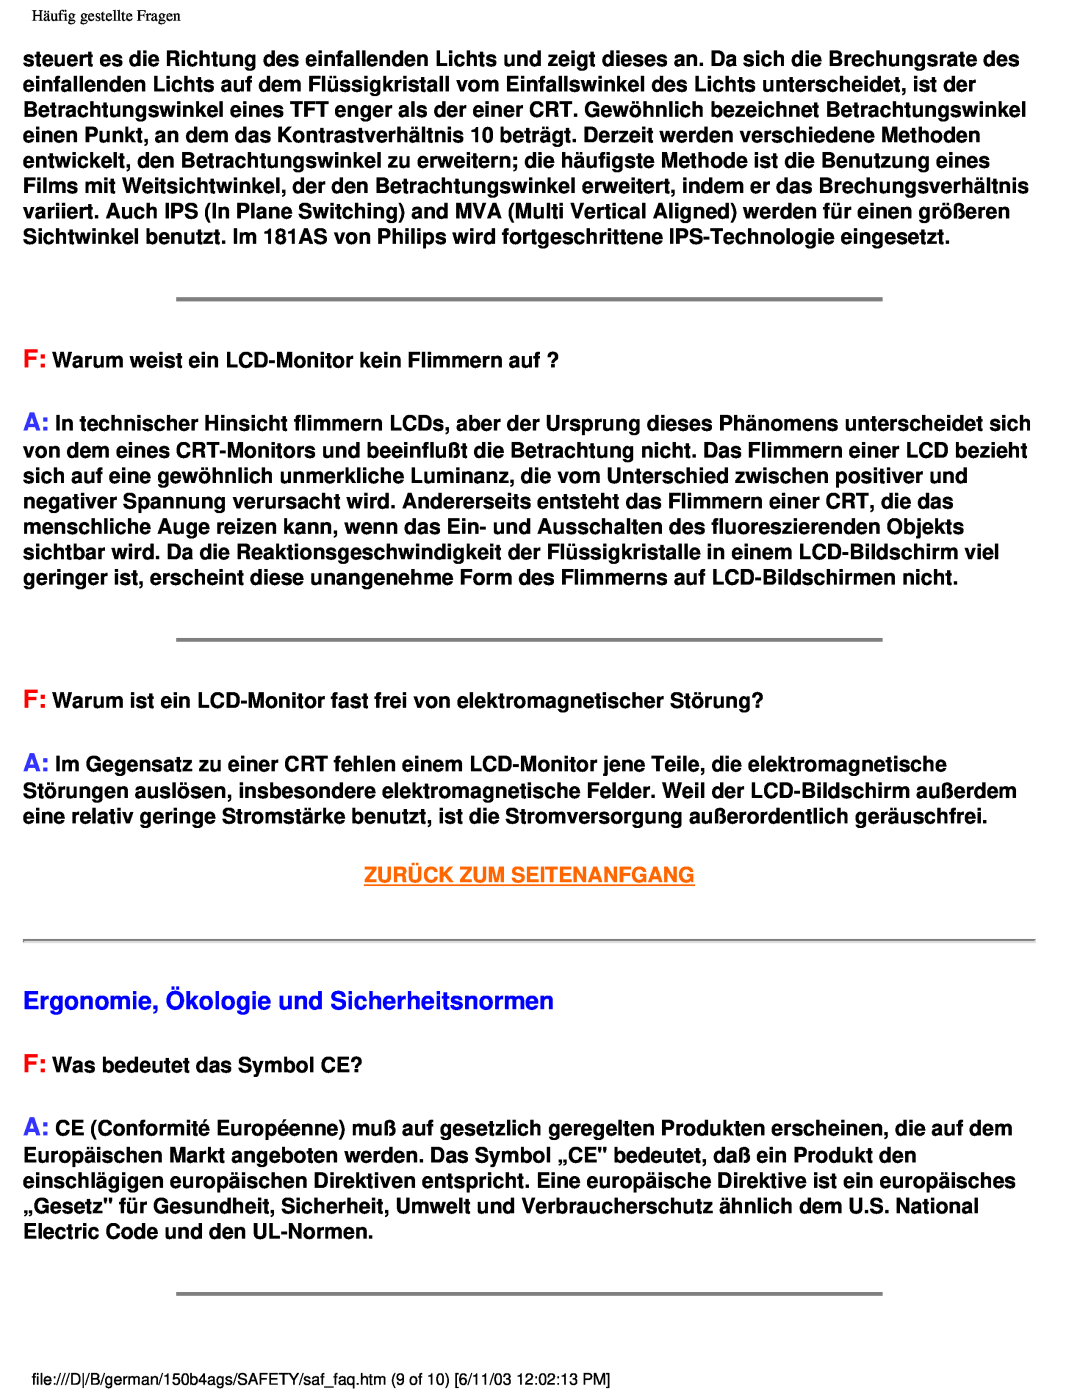 Philips 150B4AG user manual Ergonomie, Ökologie und Sicherheitsnormen, Zurück Zum Seitenanfgang 